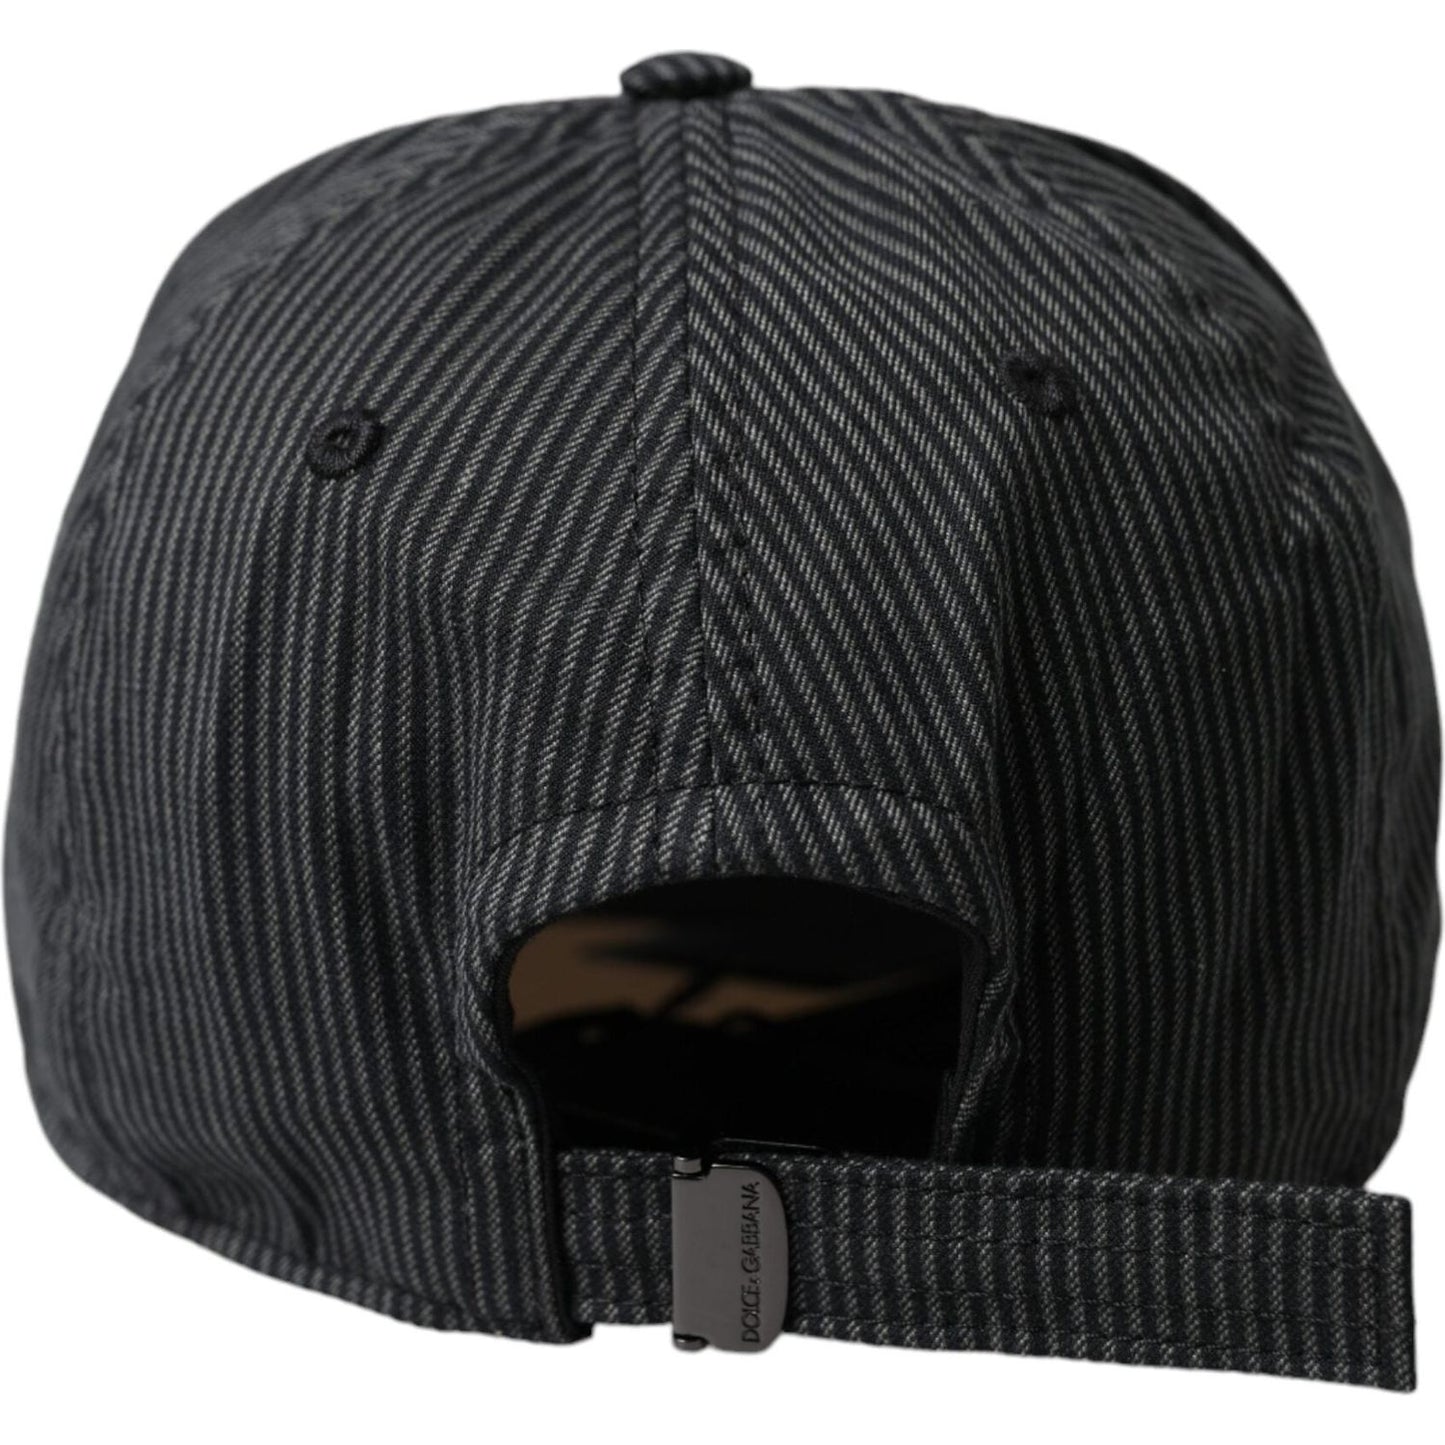 Black Cotton Embellished Baseball Hat Men